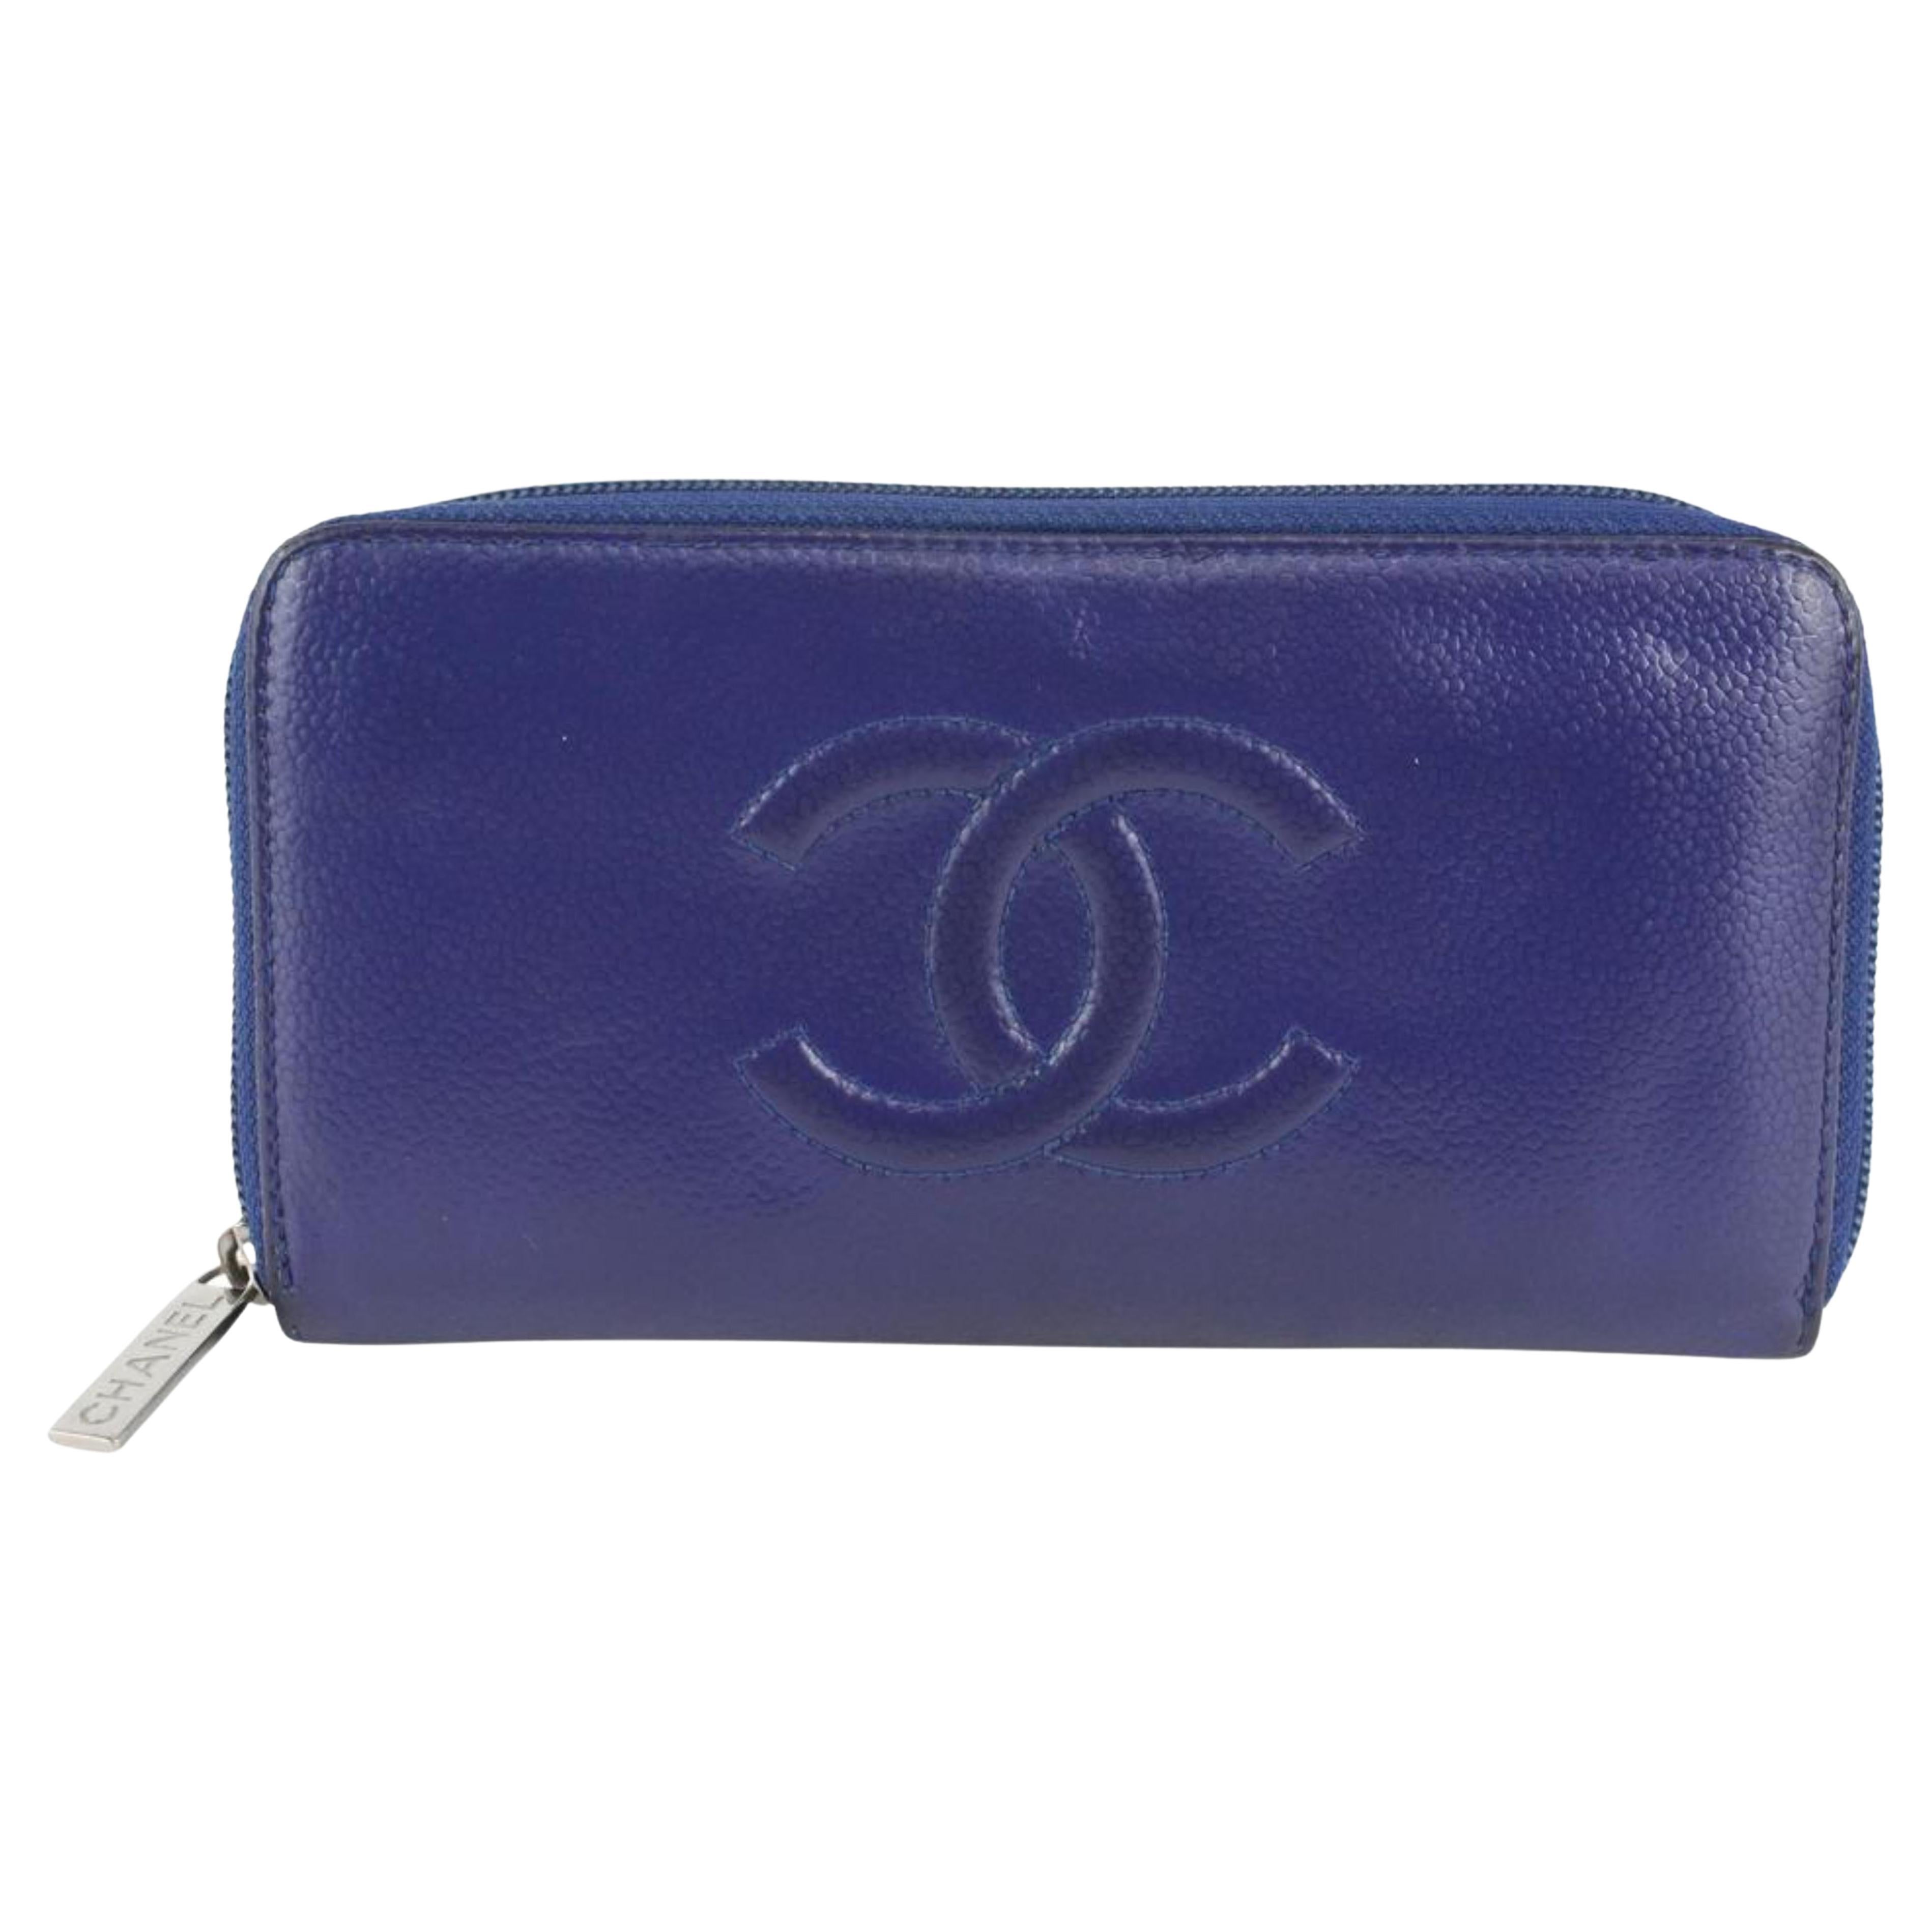 CC Zippy Leather Wallet